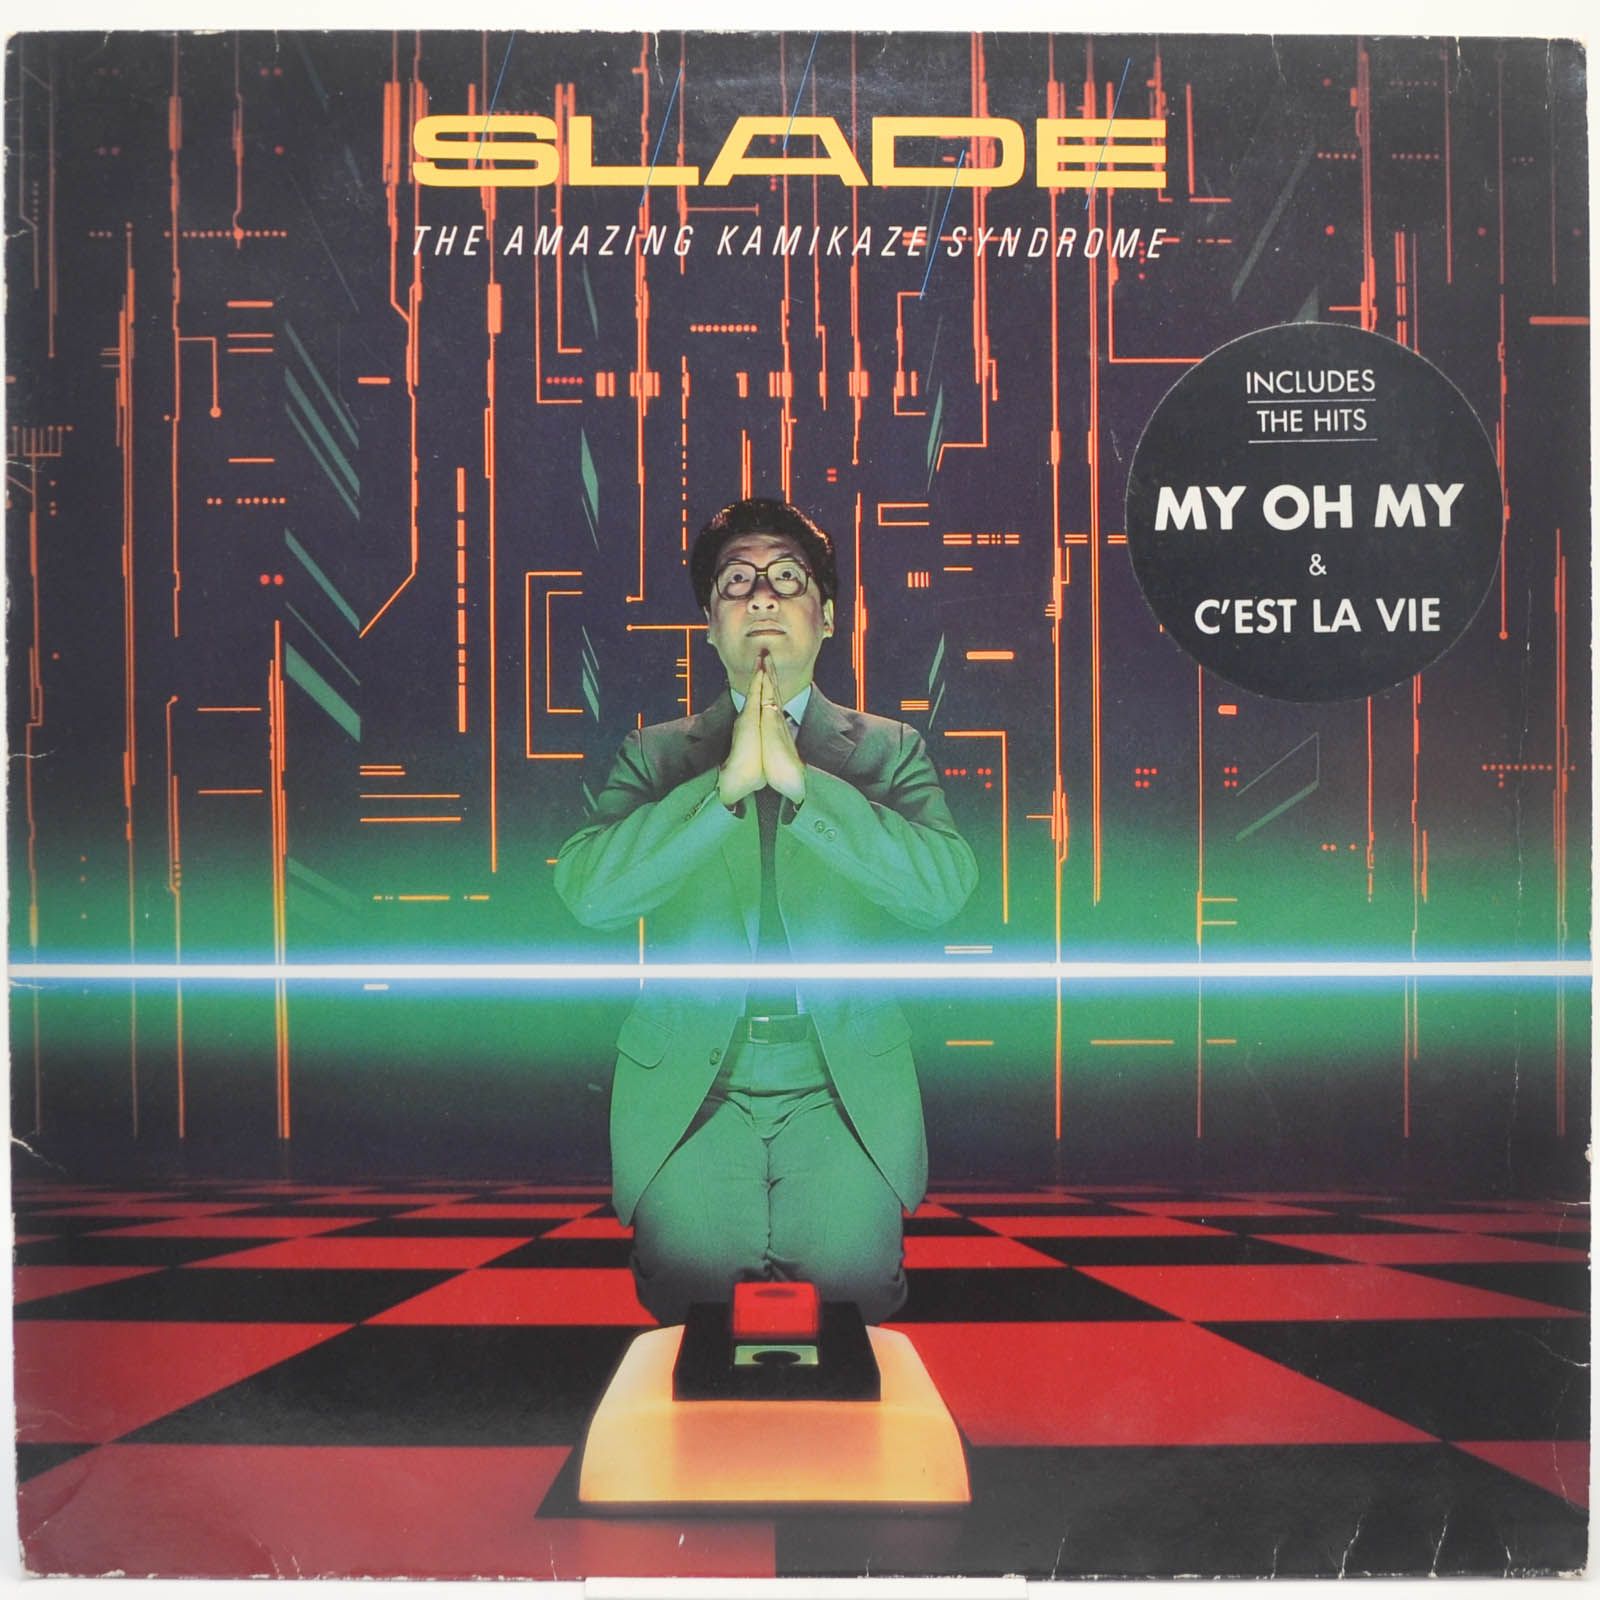 Slade — The Amazing Kamikaze Syndrome, 1984